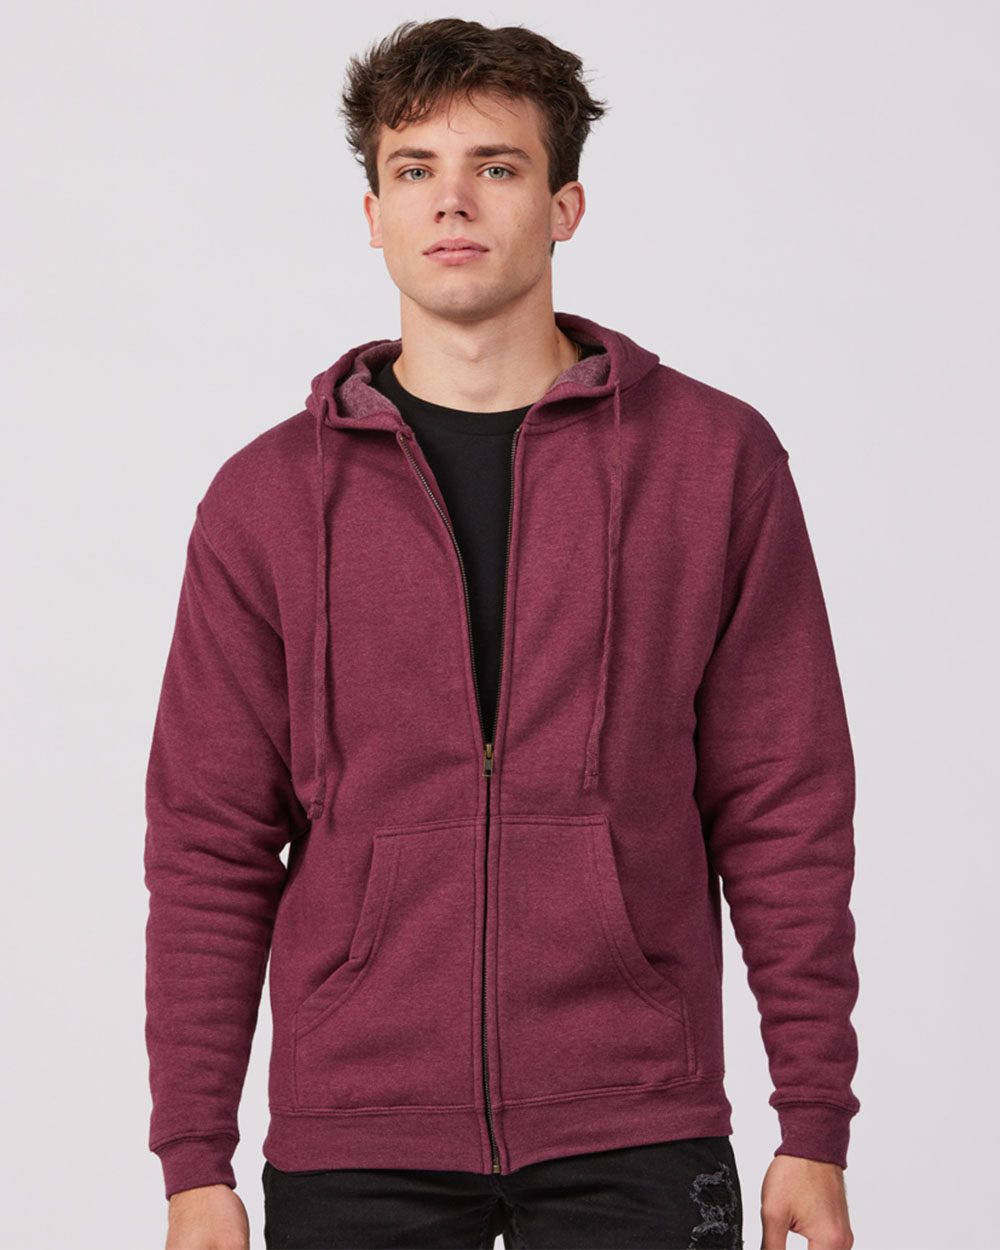 Unisex Premium Fleece Full-Zip Hooded Sweatshirt - Tultex 581